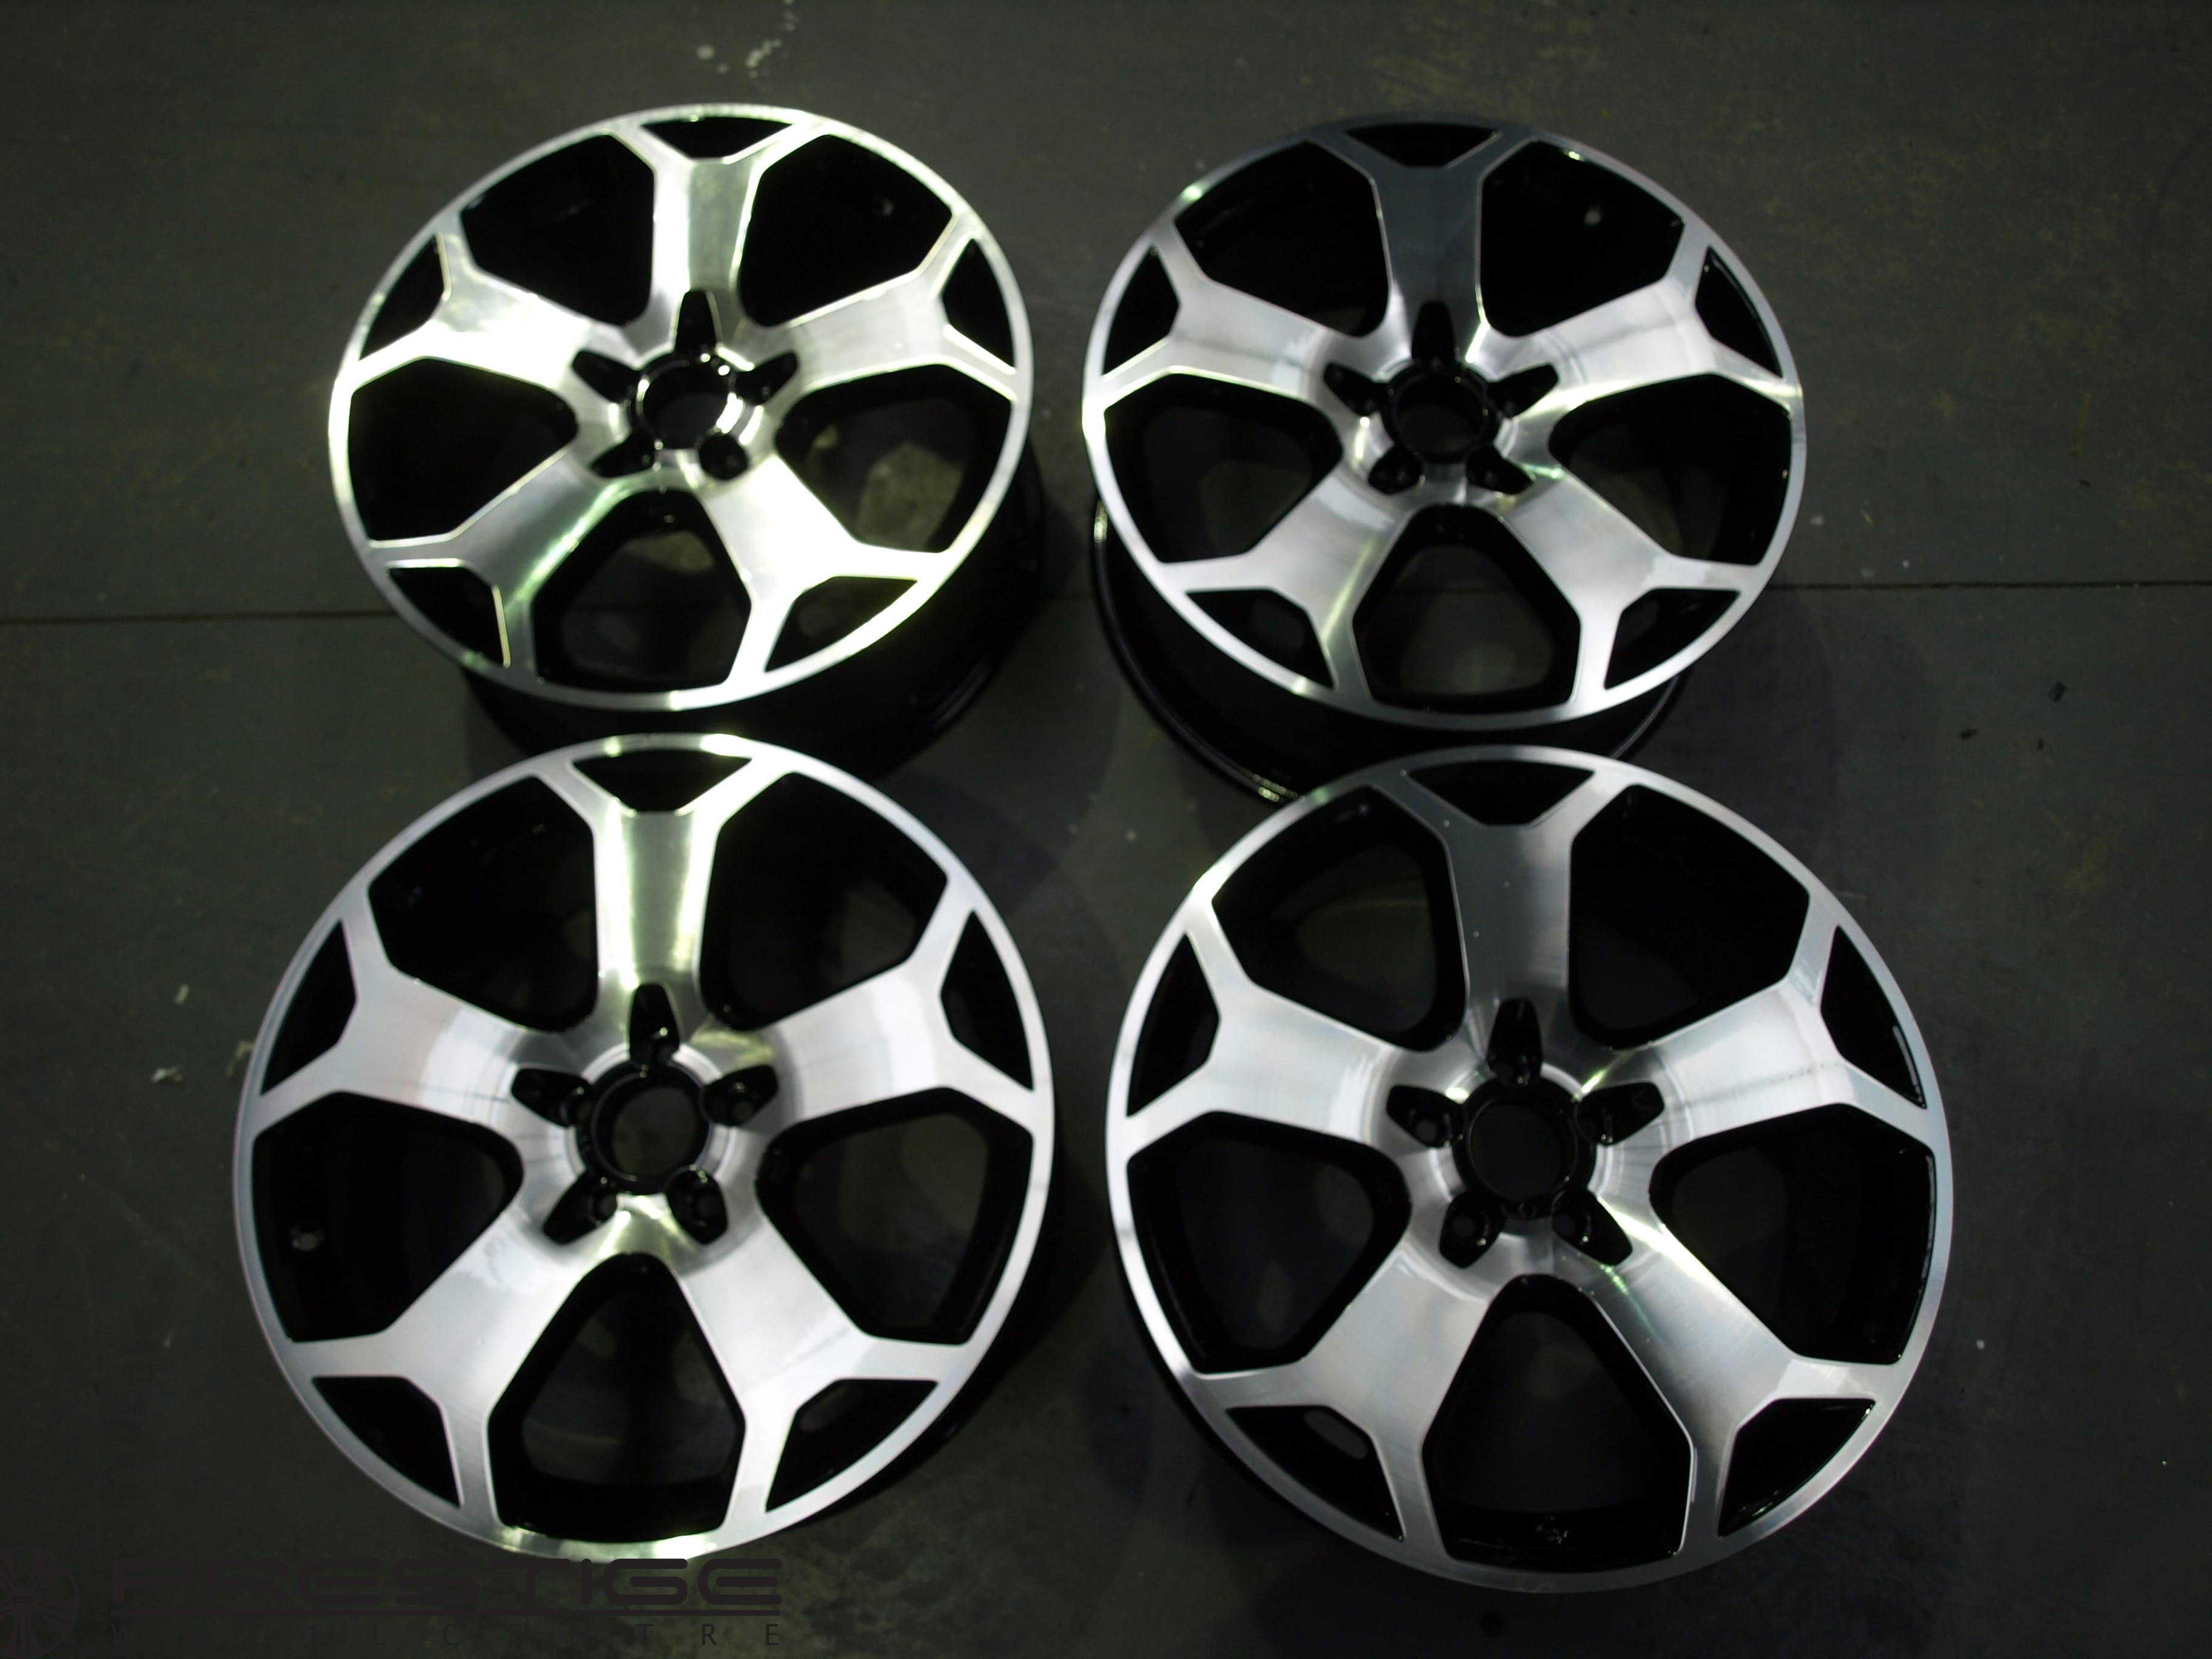 Customised Vauxhall Snowflake alloy wheels